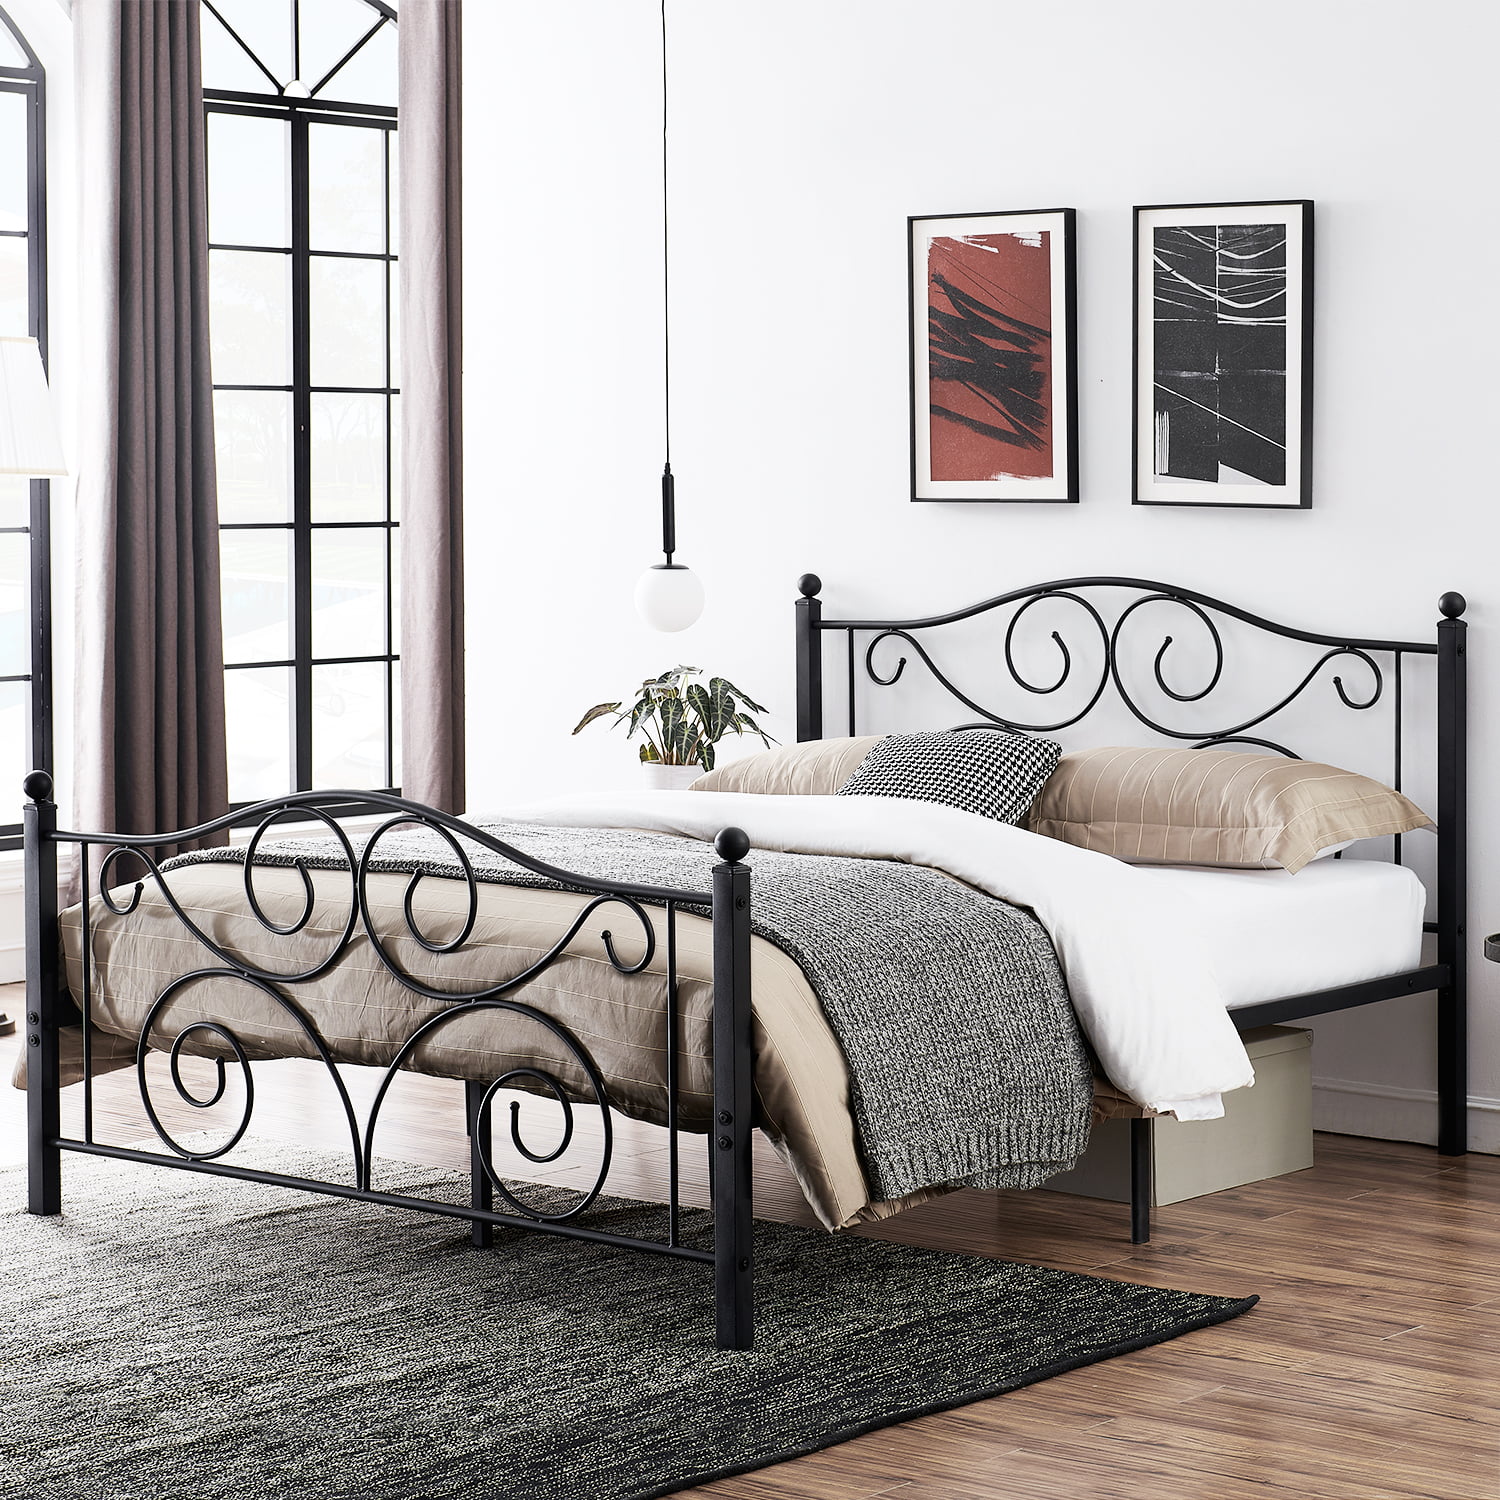 Antique 12.6" Black Bed Frame Platform Bed with Victorian Metal